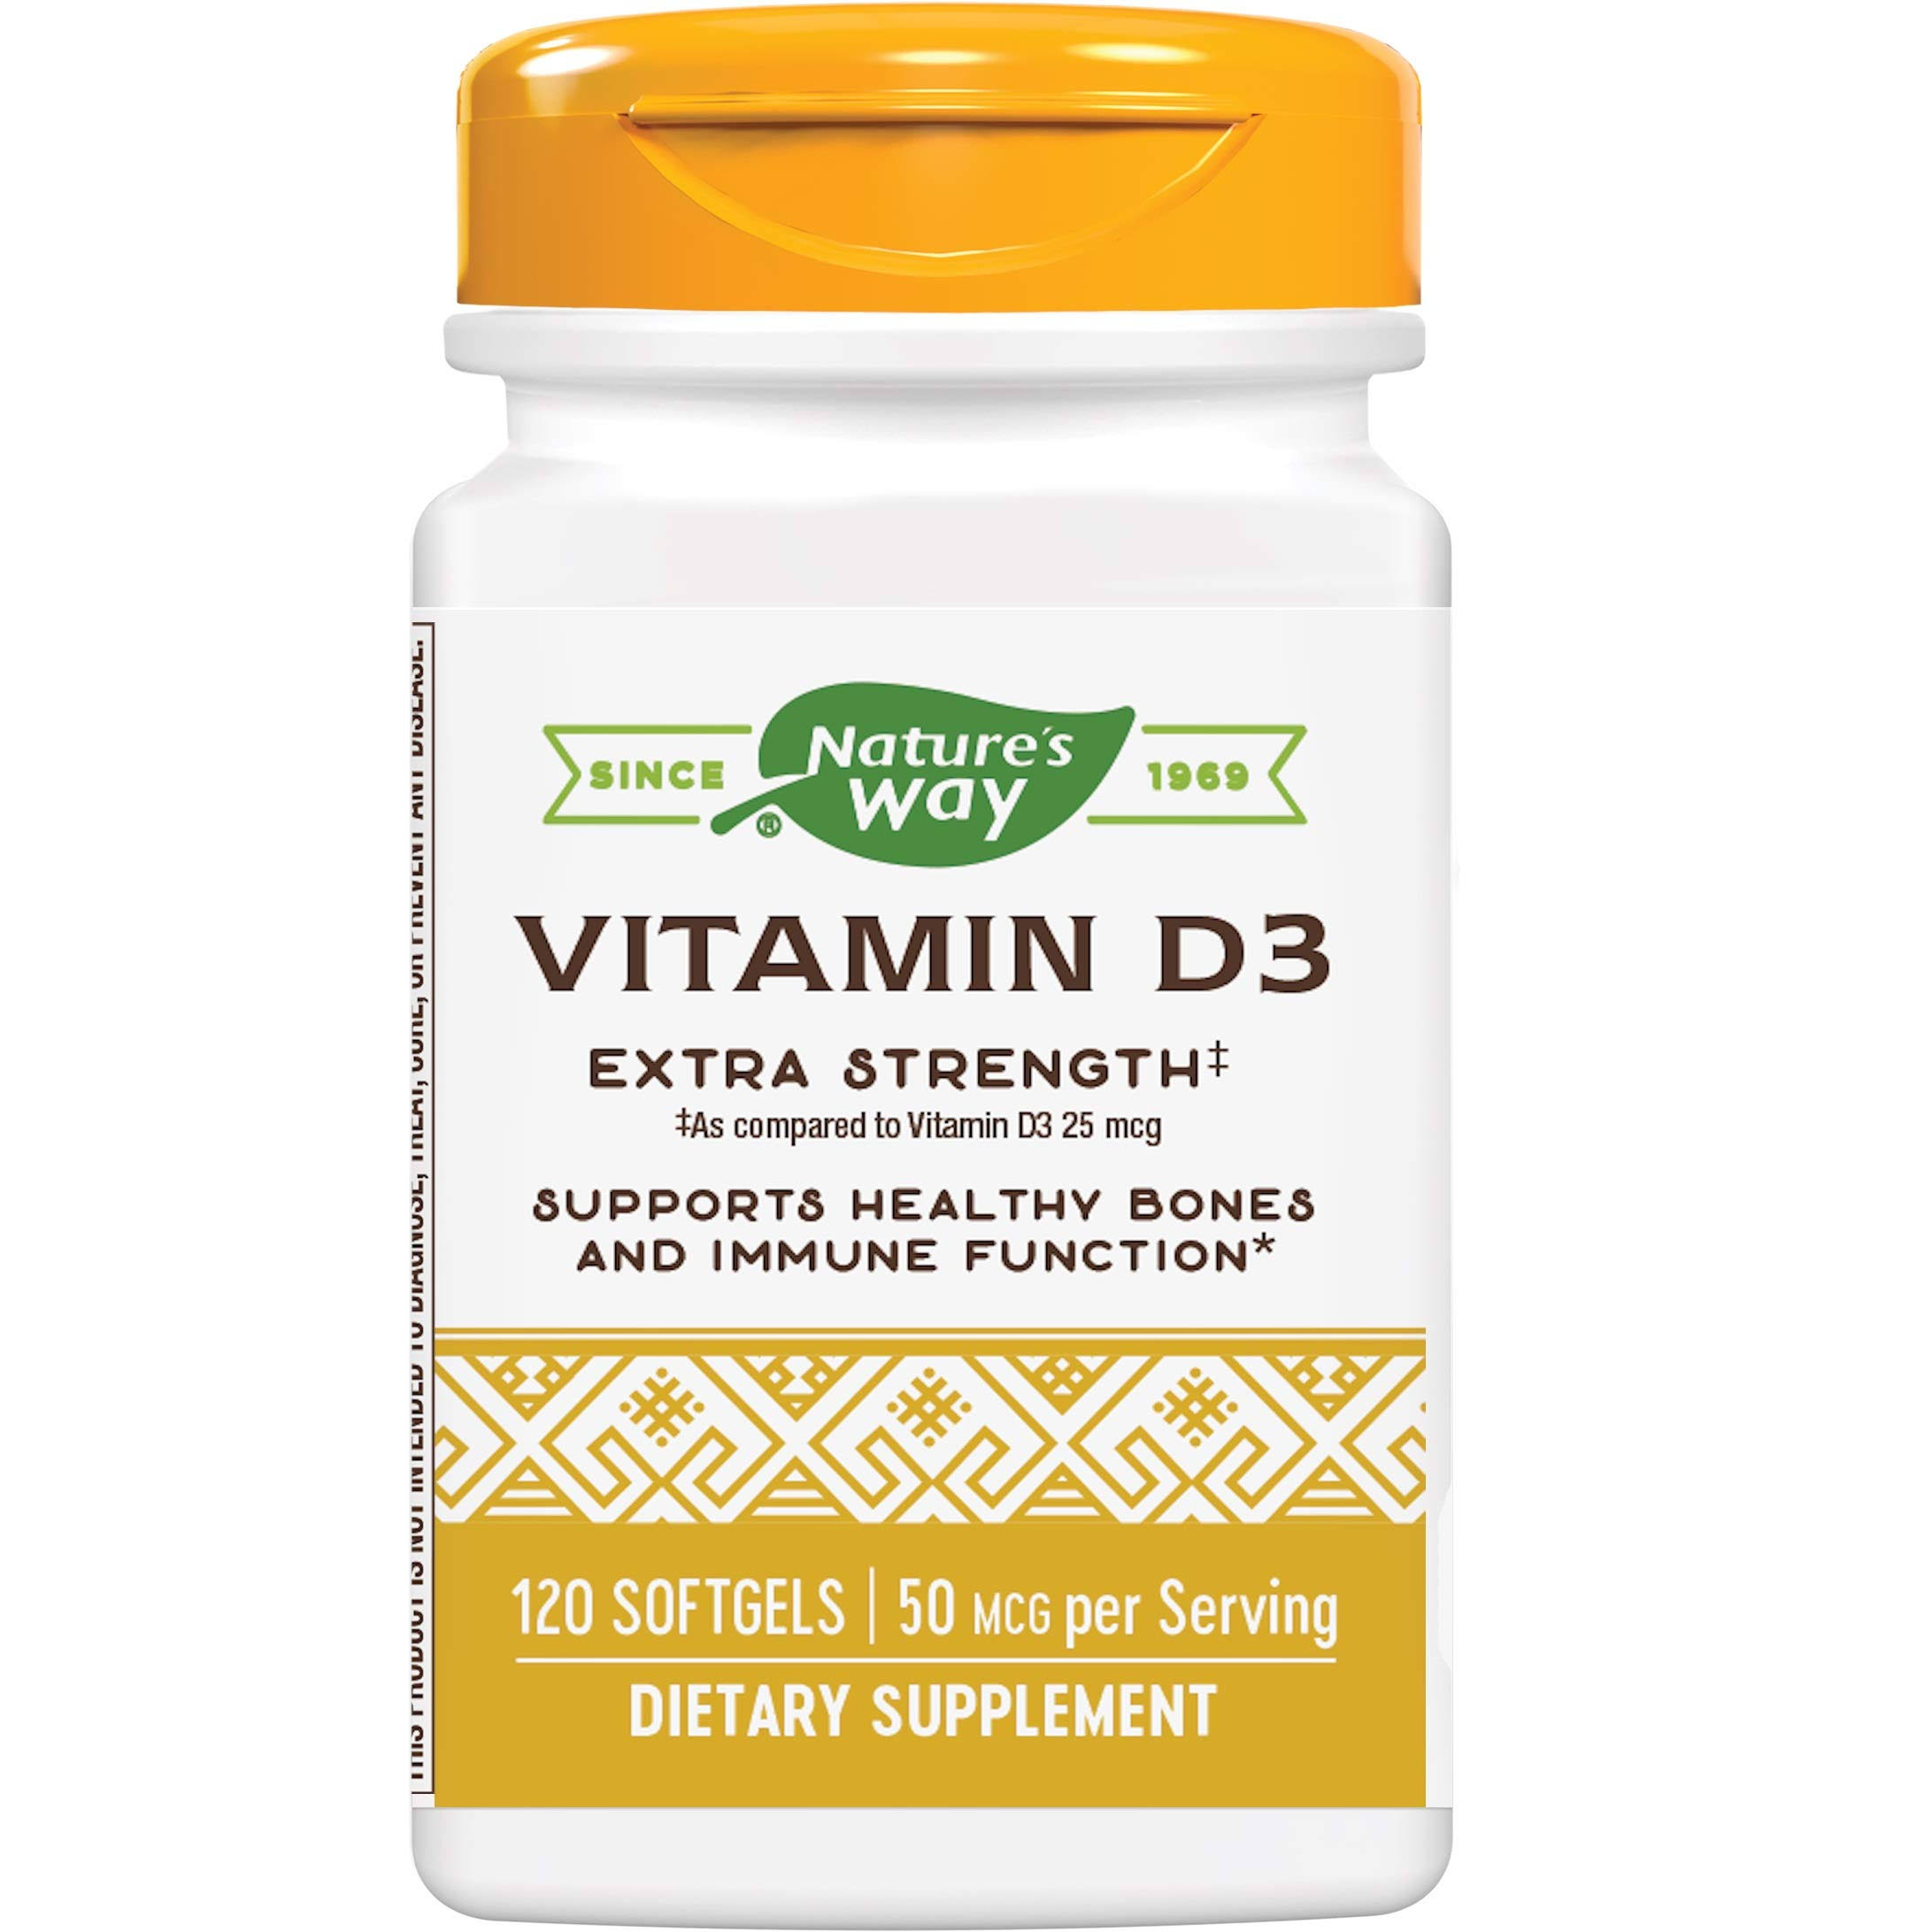 Nature's Way Vitamin D3 Supplement - 2000 IU, 120 Softgels